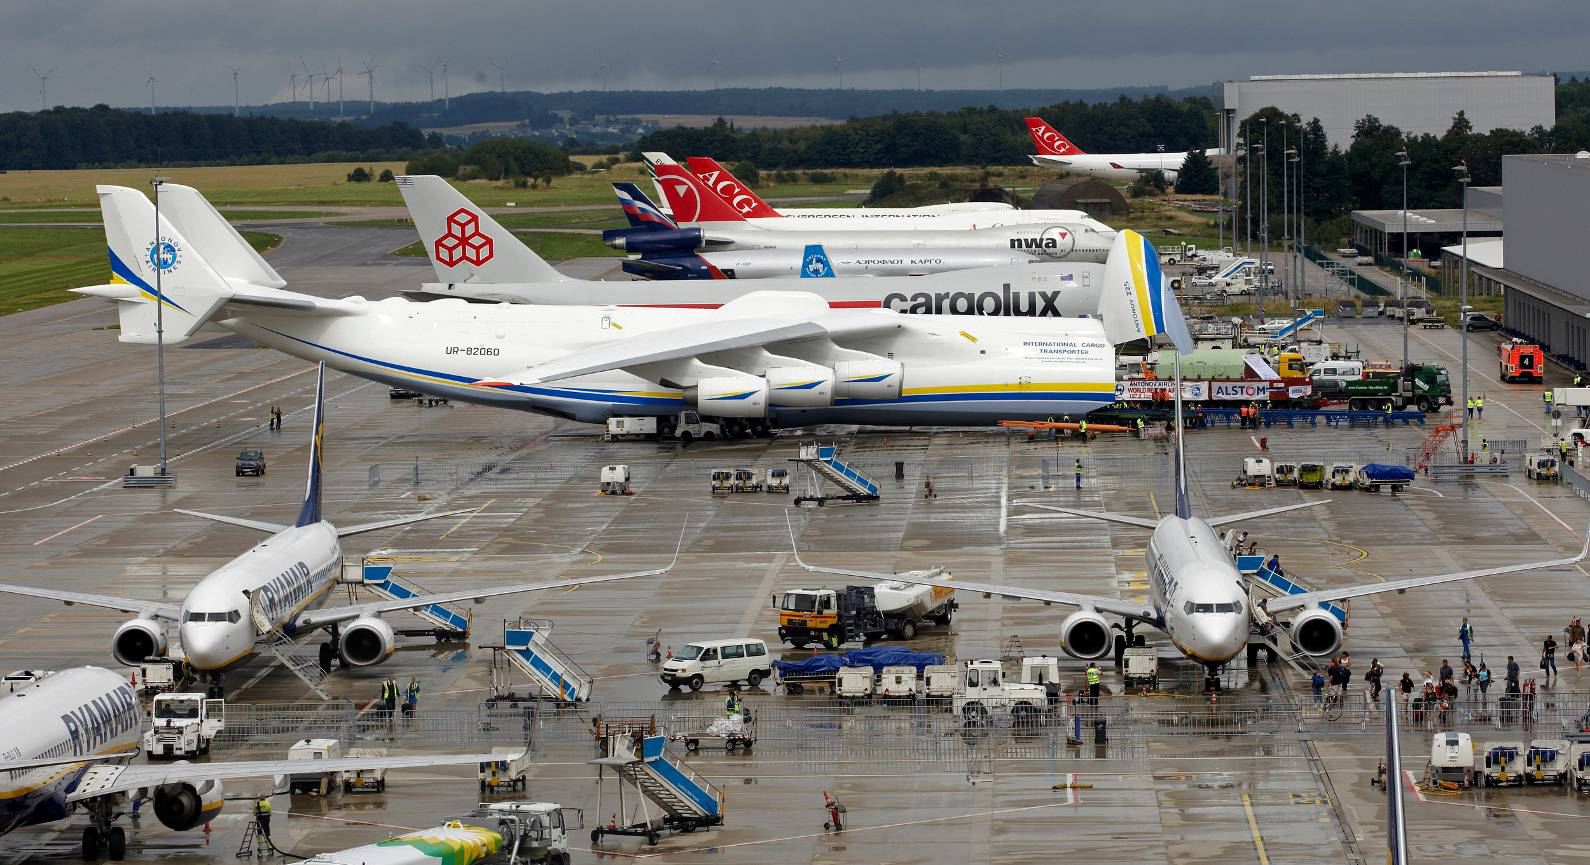 Frankfurt-Hahn cargoközpontja, a tehergépek közt épp a világ legnagyobb repülőgépe, az An–225 rakodik <br>(fotó: Frankfurt-Hahn)